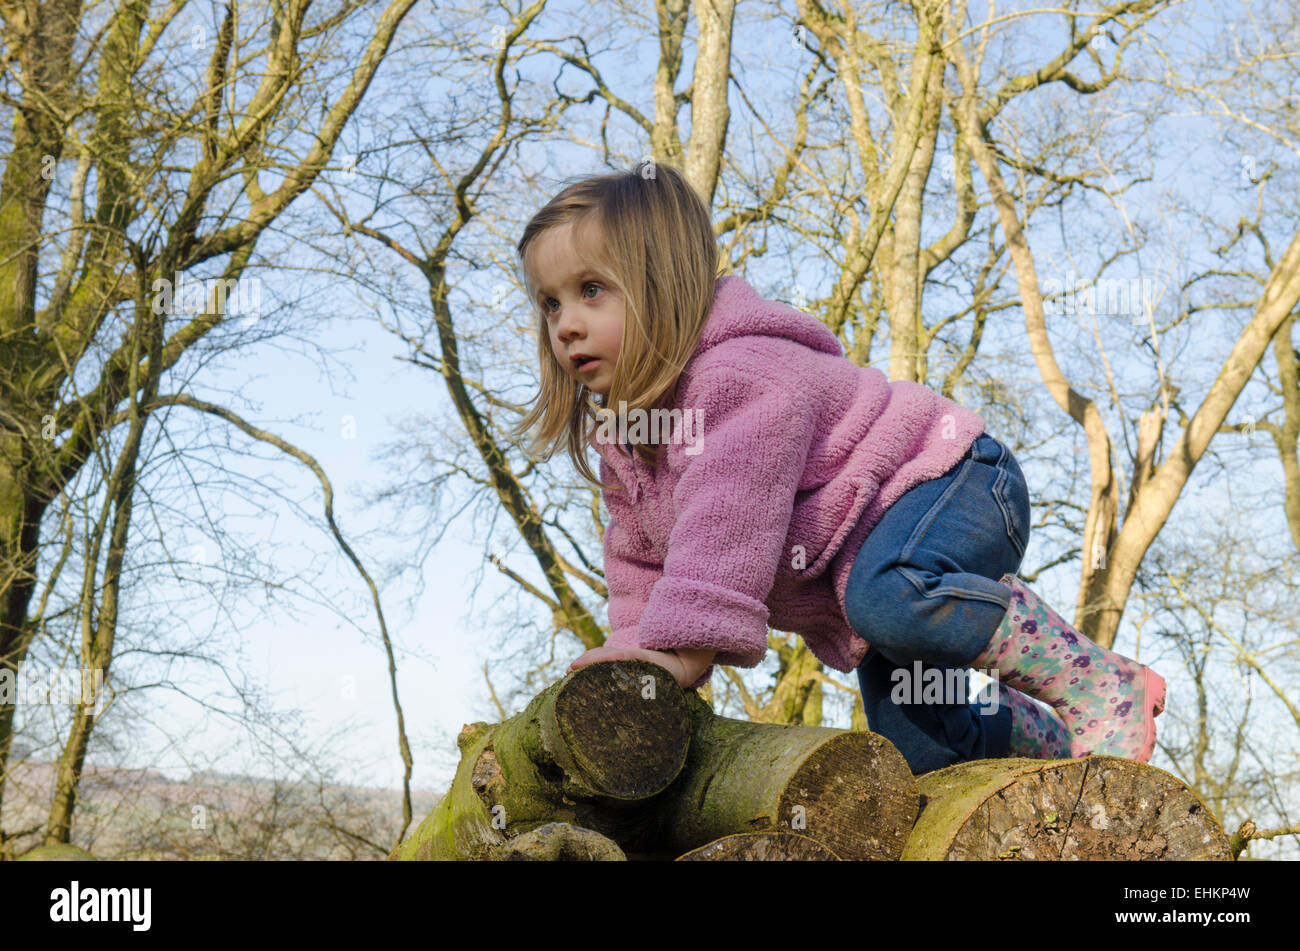 Bambina di due anni e mezzo il vecchio, arrampicata su una pila di registri nel bosco in inverno, Sussex, Regno Unito. Marzo. Foto Stock